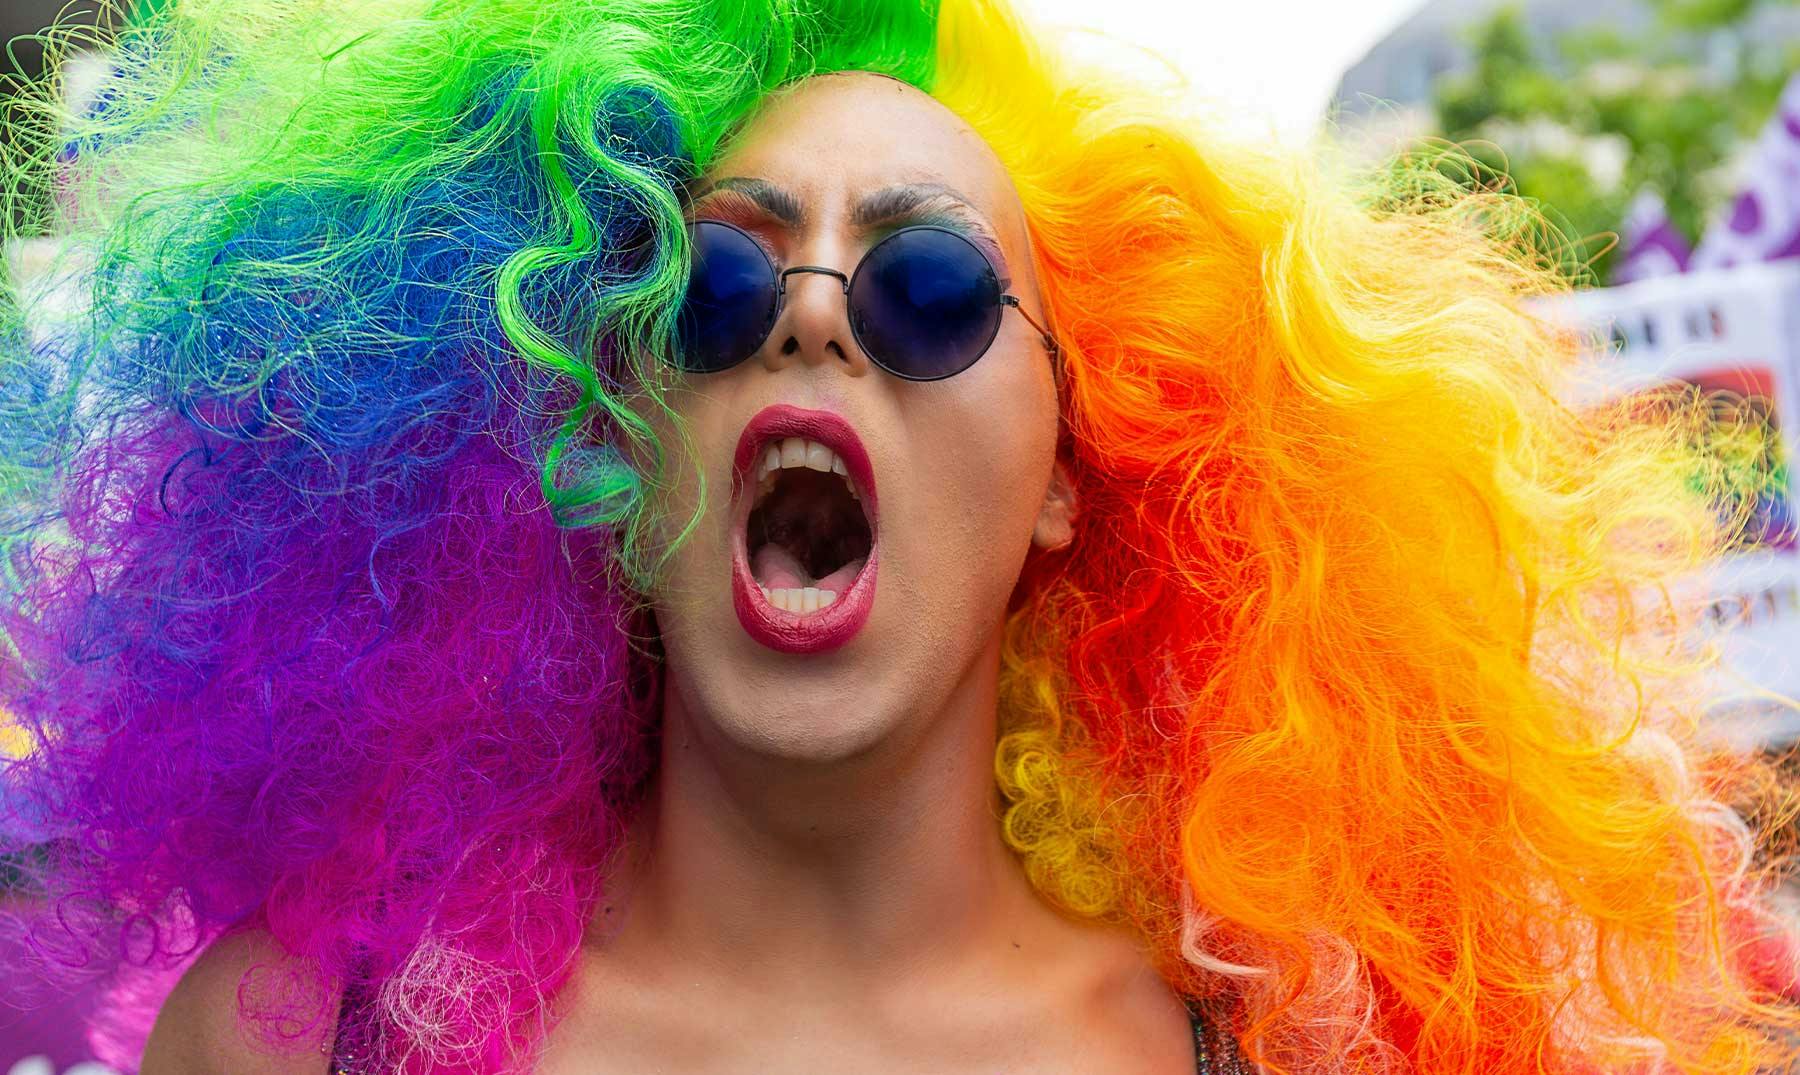 Festivales LGBT | ¡Celebra la diversidad y el amor por todo el mundo!